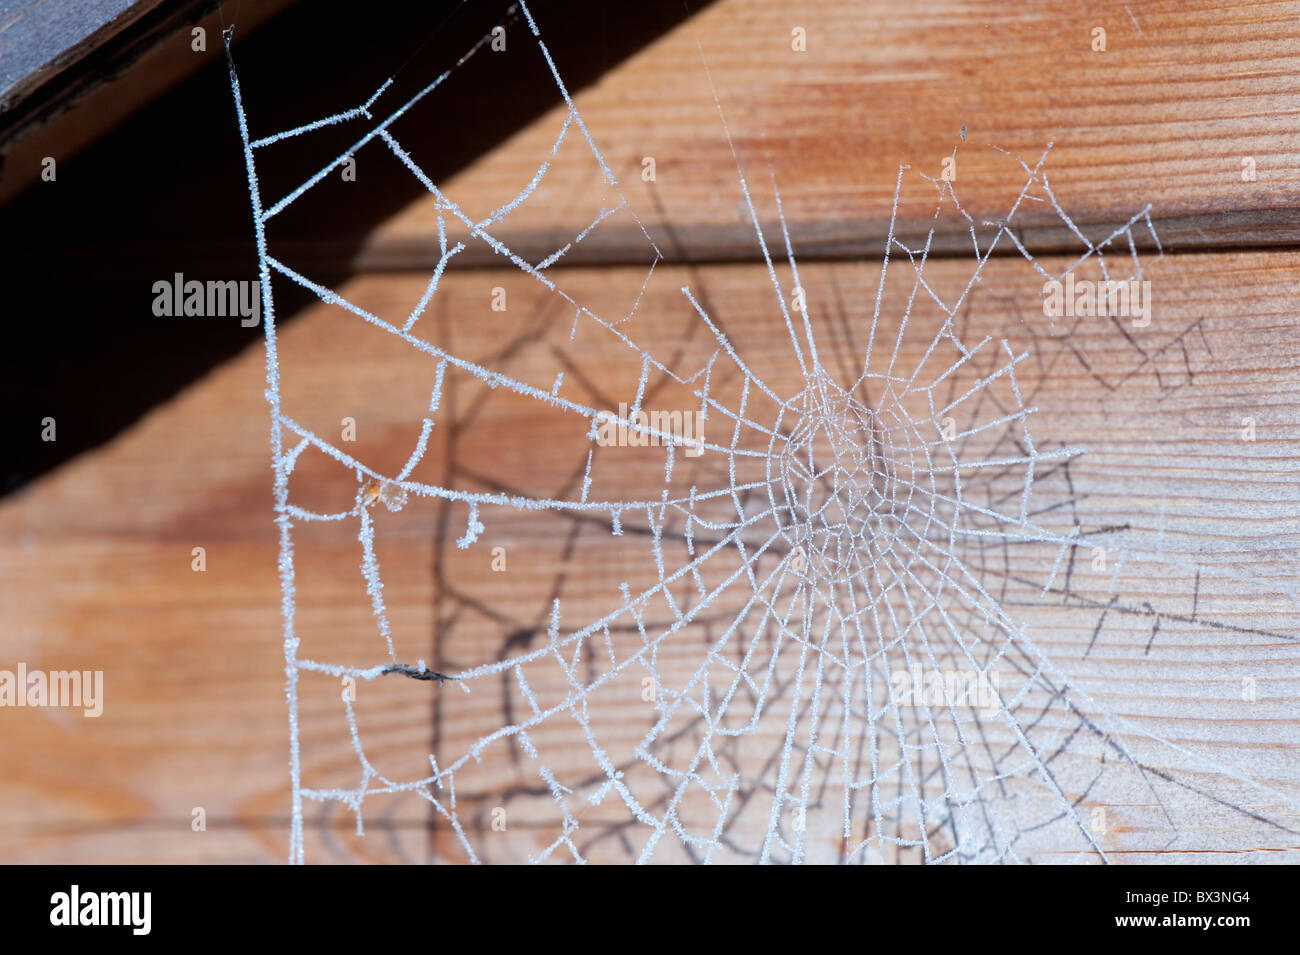 Spinnen-Netz hängt von der Decke ein Gartenhaus Stockfotografie - Alamy